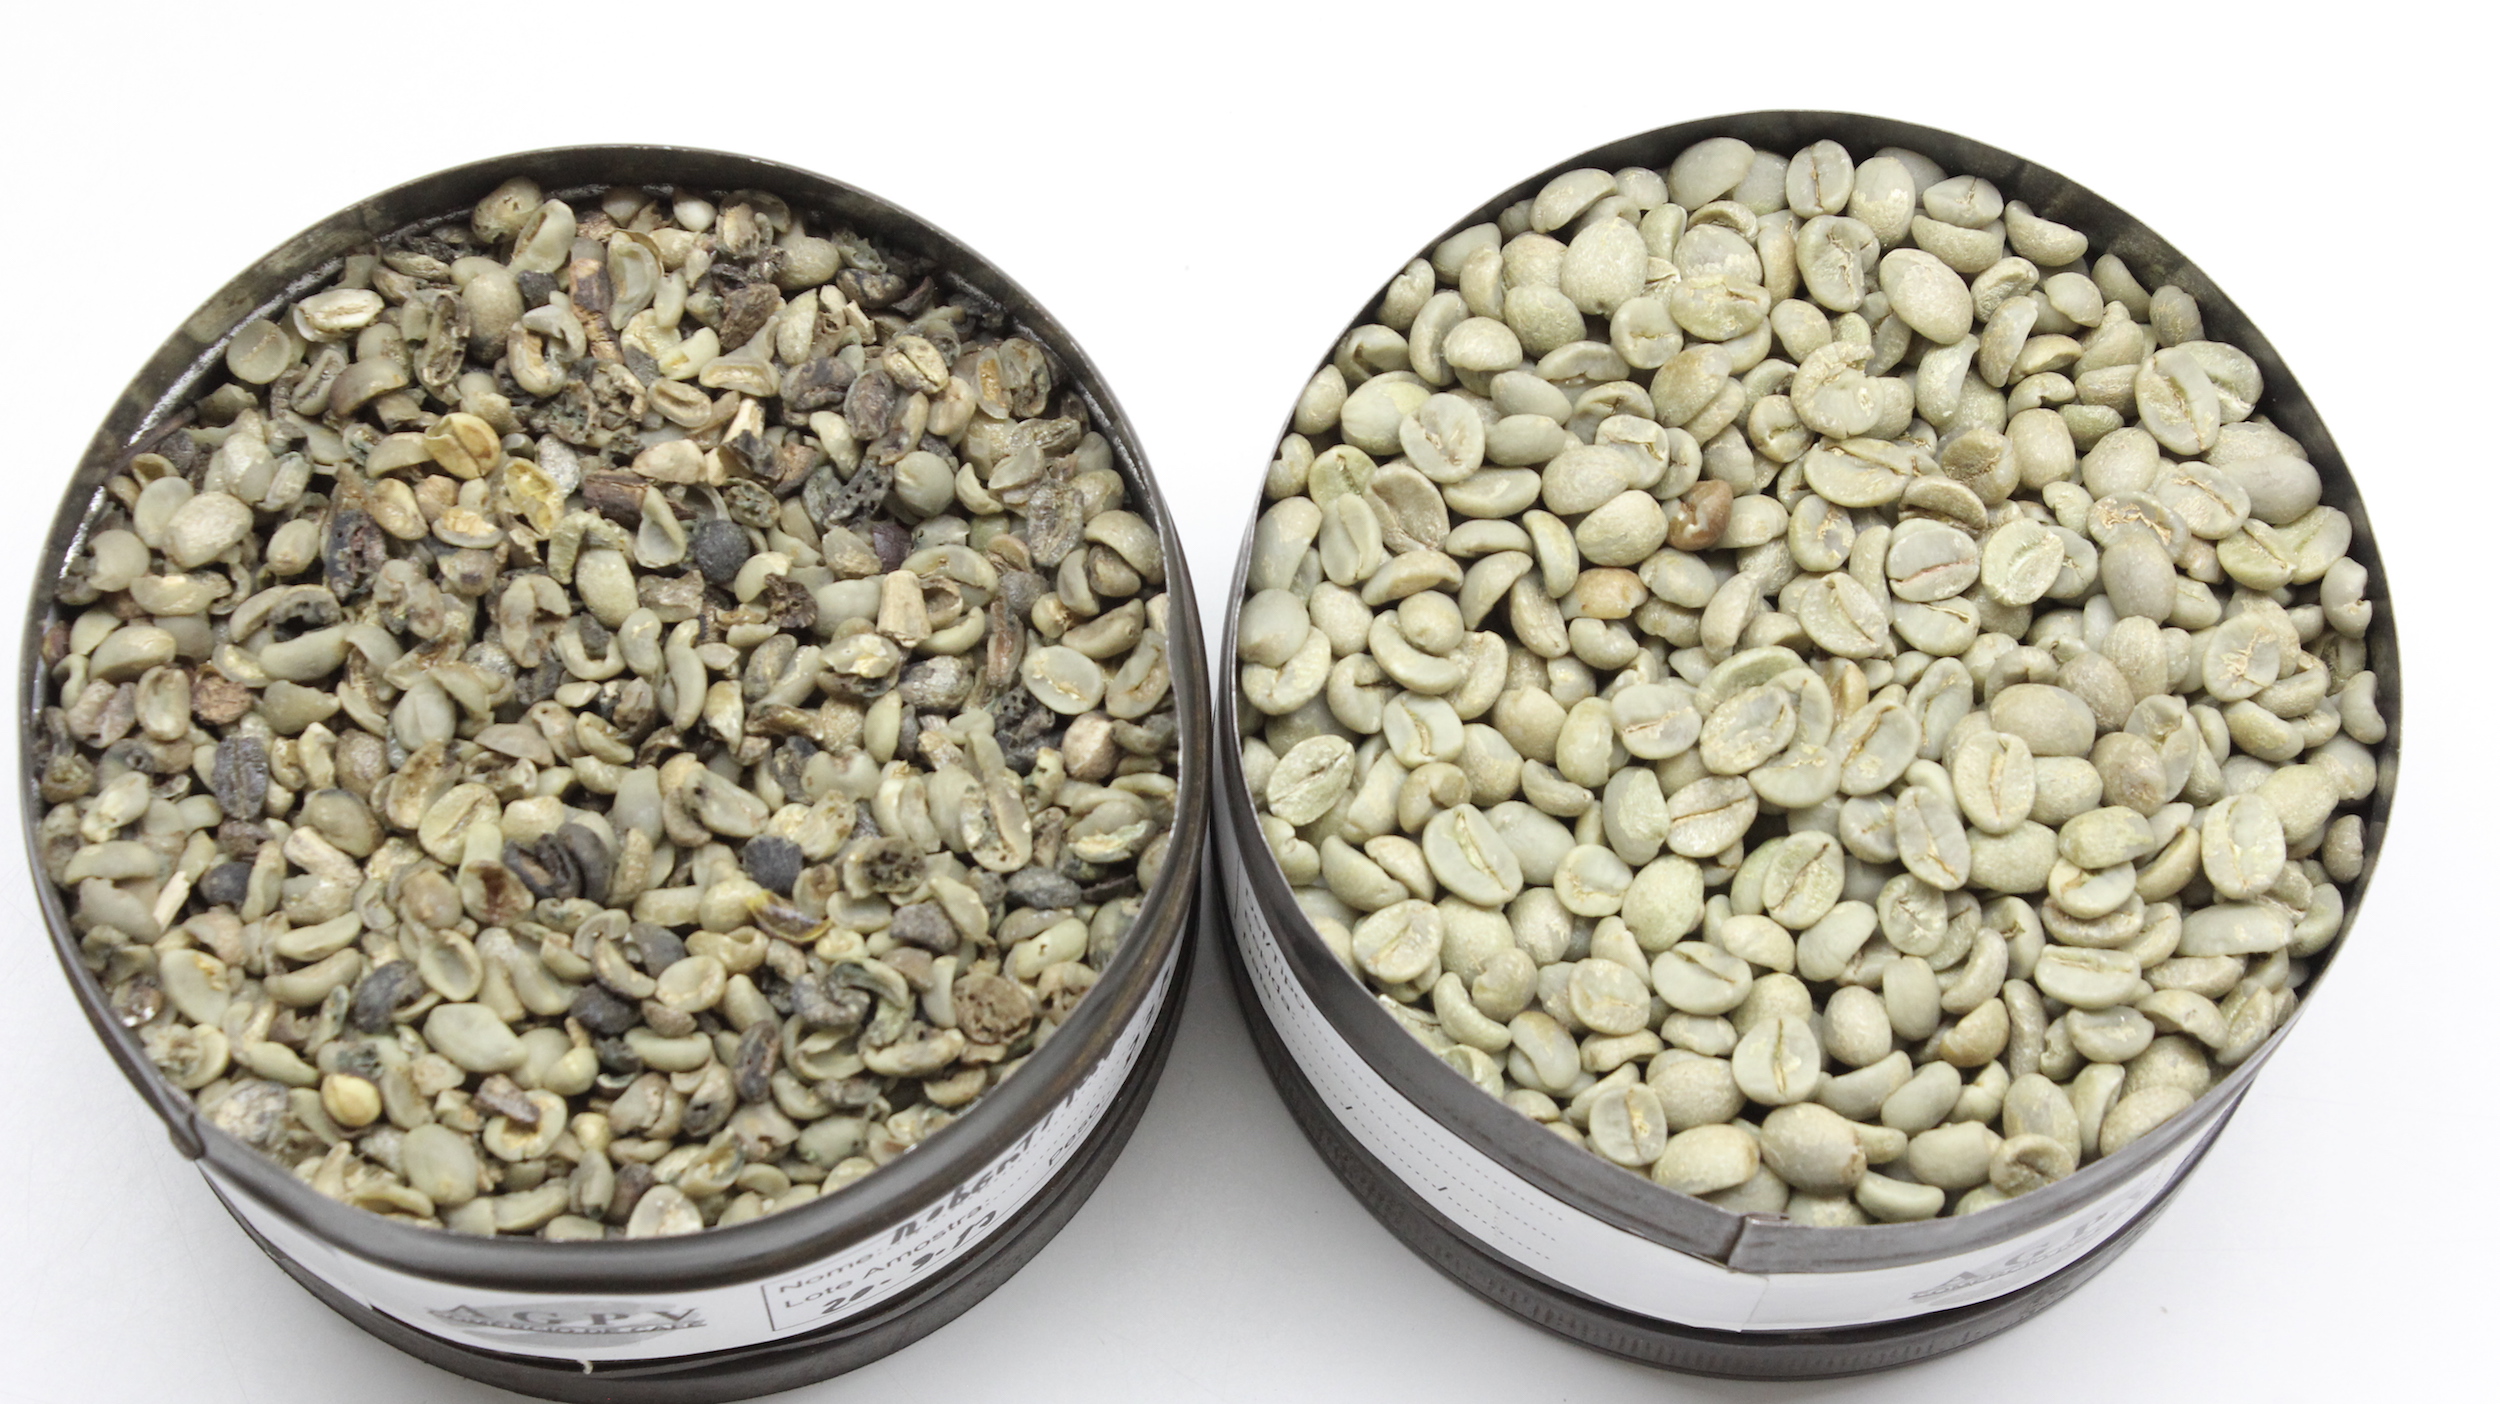 Amostras reais de café tradicional (esquerda) e café especial (direita)